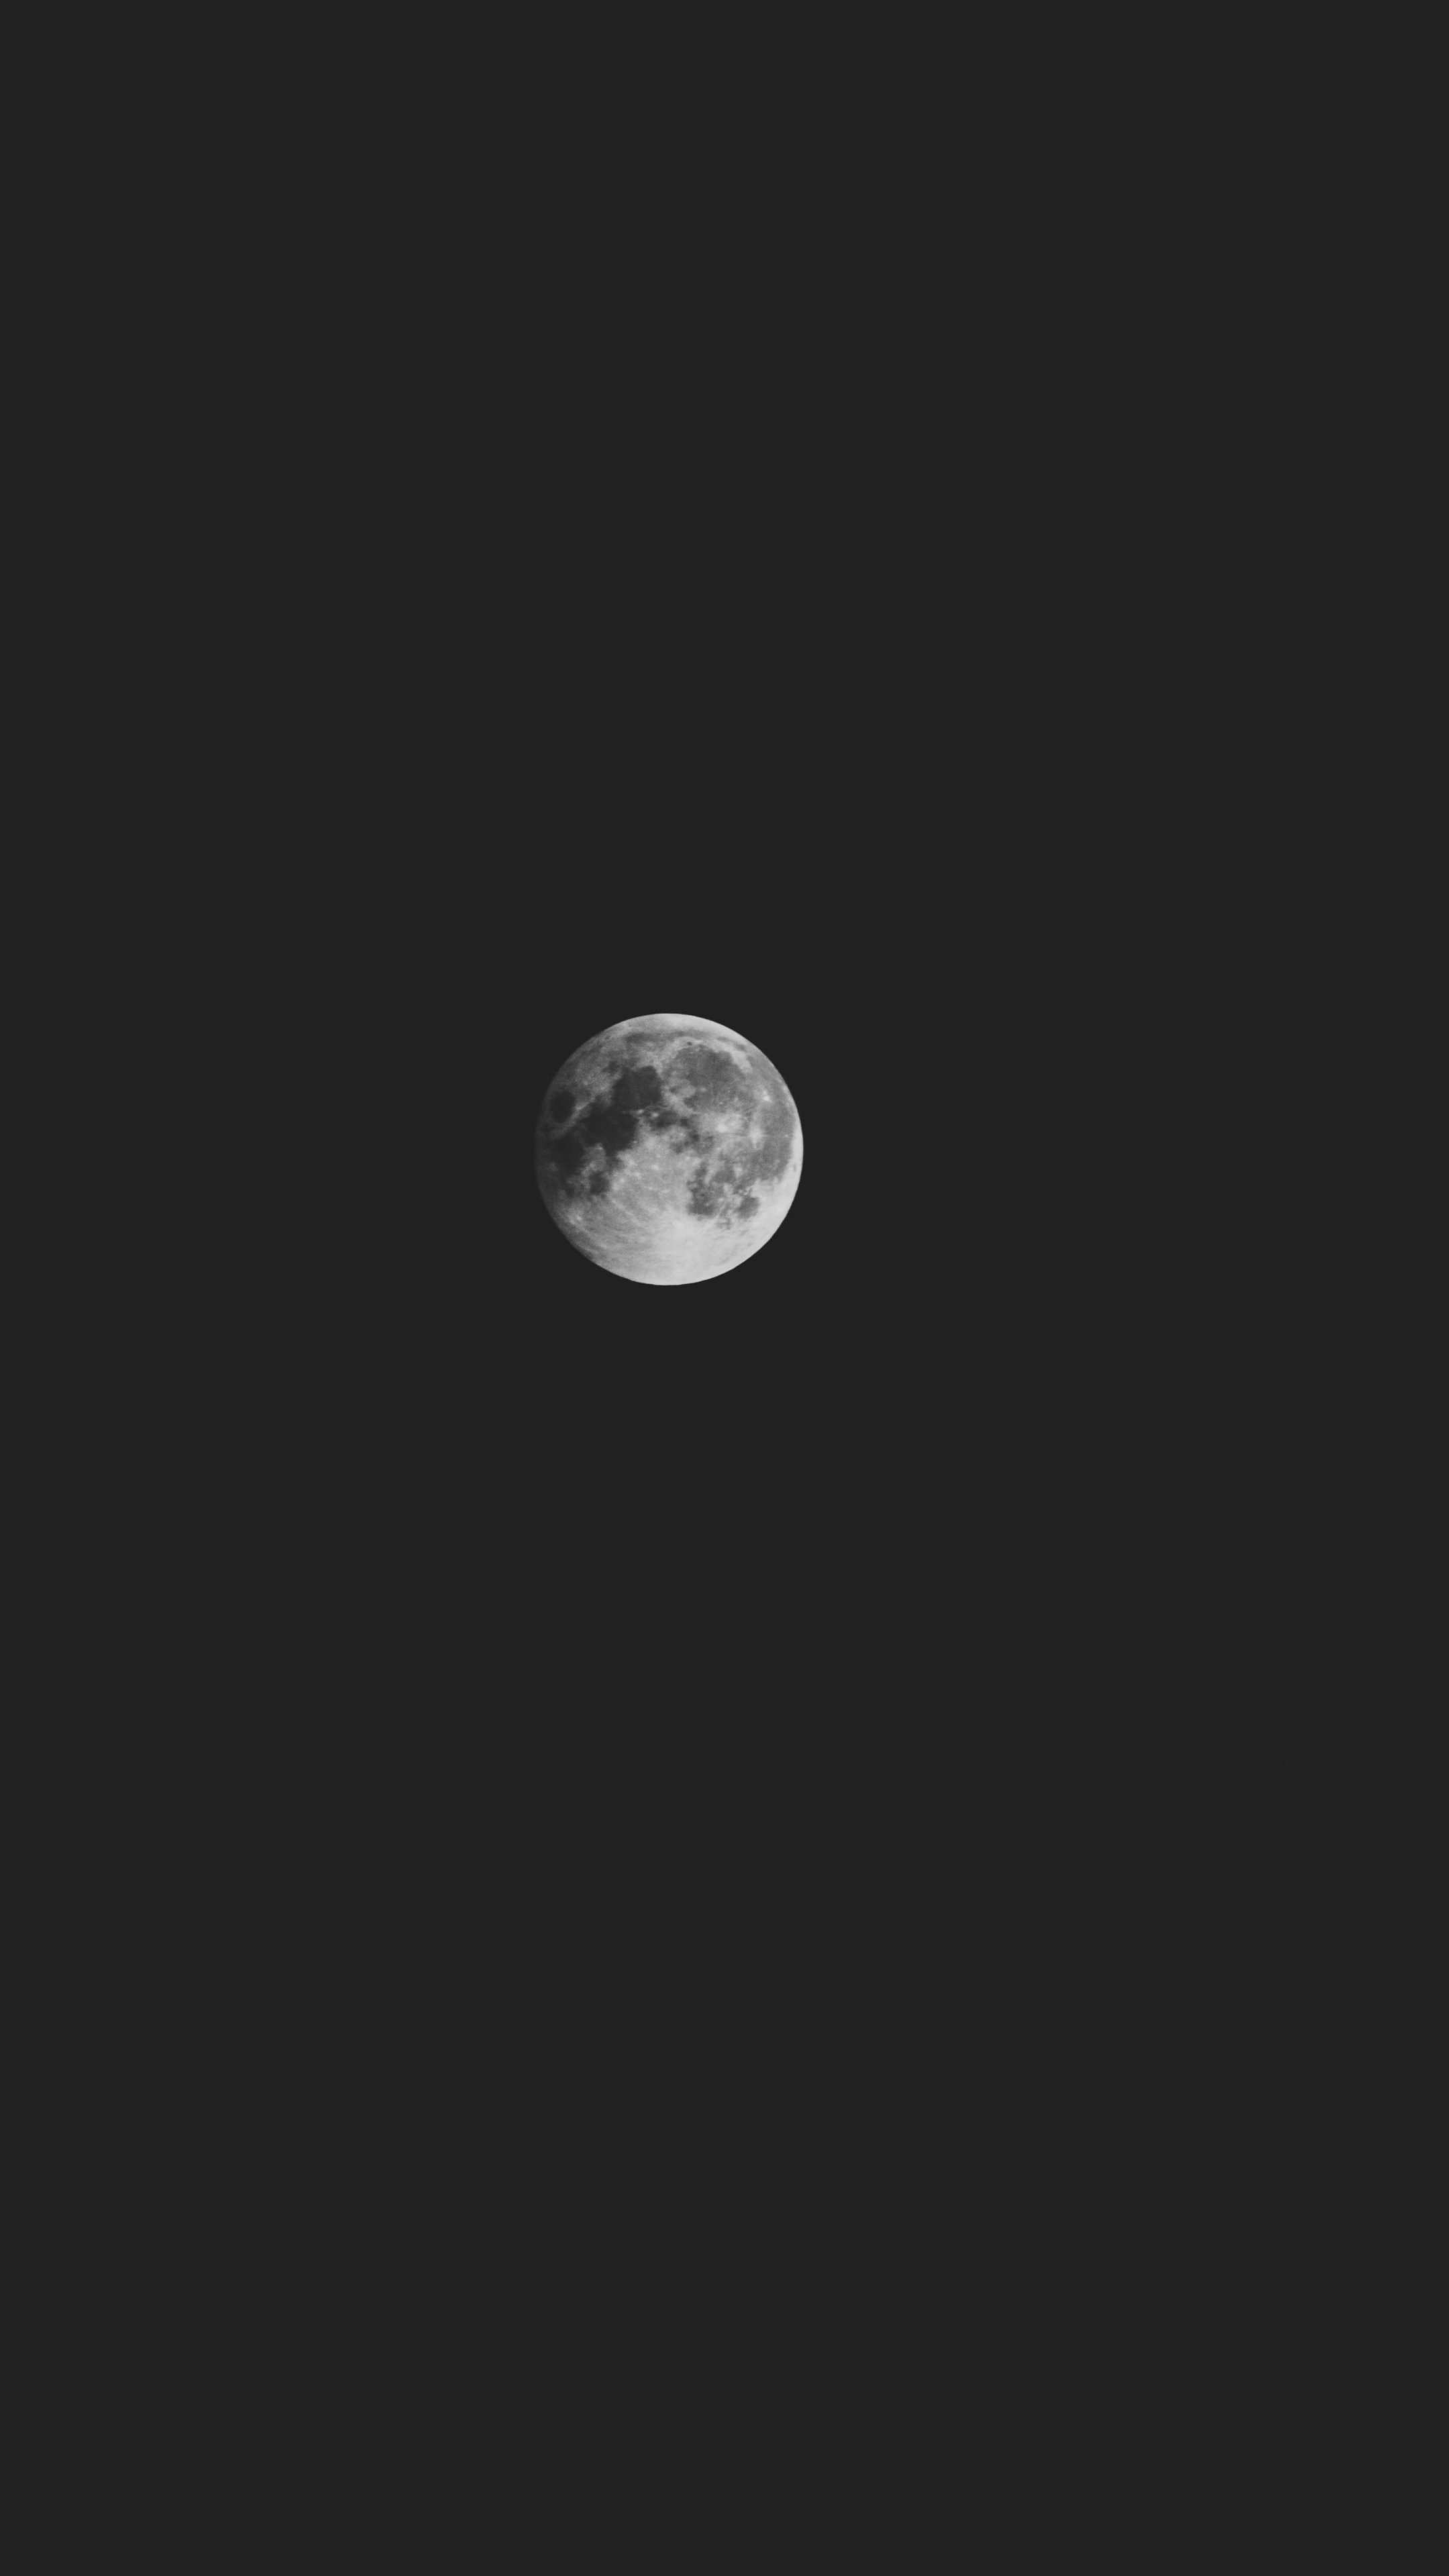 Bạn đang tìm kiếm một hình nền điện thoại ấn tượng với chân dung Mặt trăng sắc nét như thật? Đừng bỏ qua hình nền điện thoại Mặt trăng 4K này. Chắc chắn bạn sẽ rất hài lòng với sự tươi mới và độc đáo của nó.